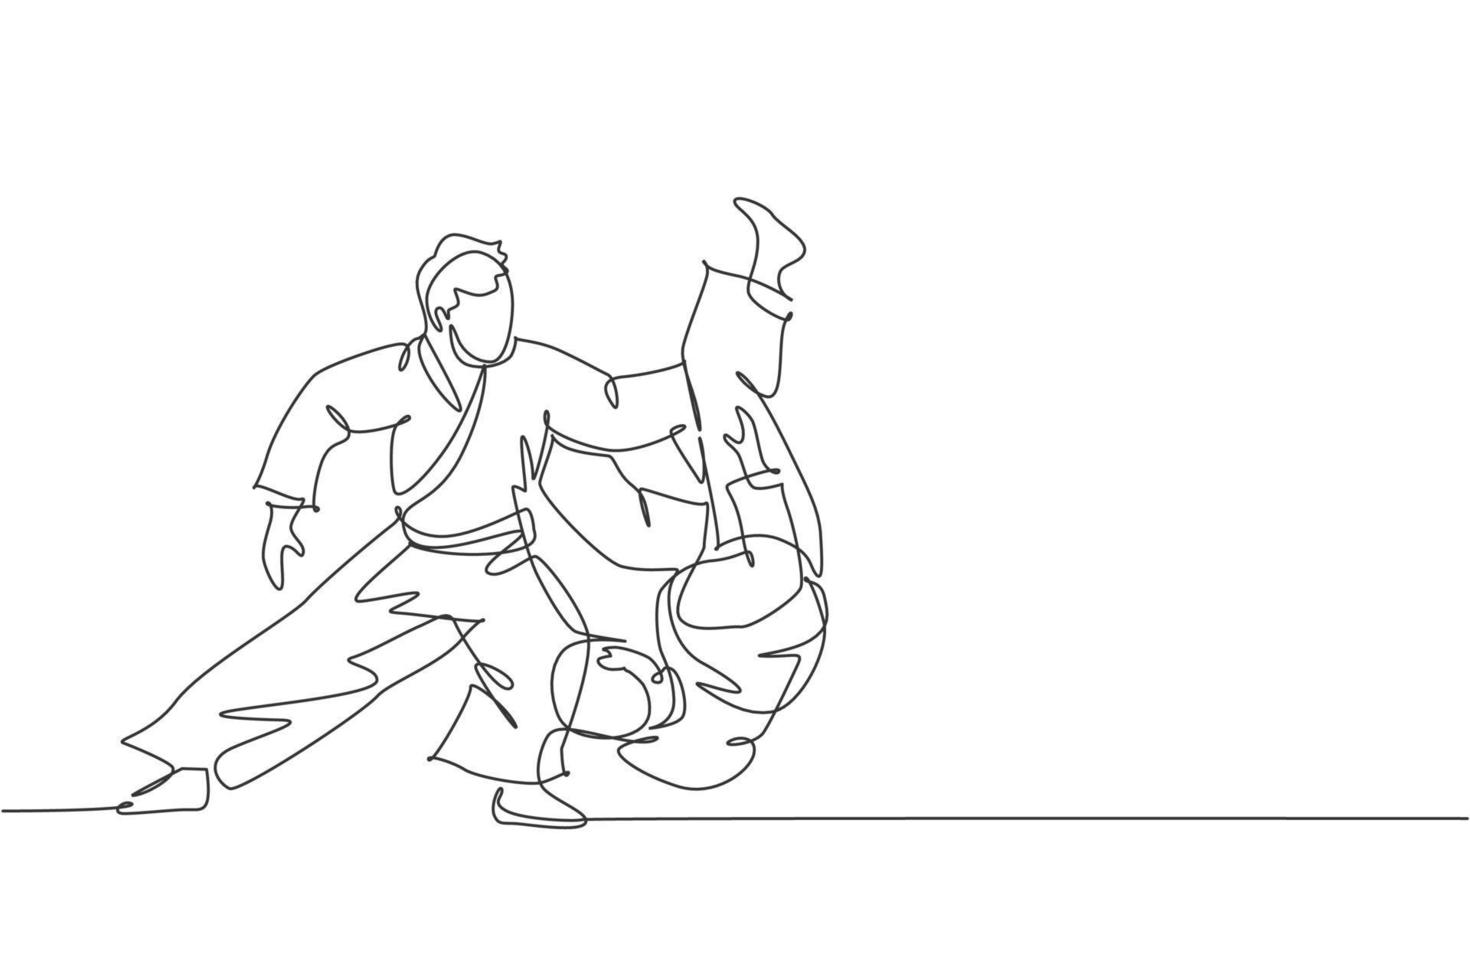 enda kontinuerlig linje ritning av två unga sportiga män som bär kimono övar throeing i aikido slåss teknik. japansk kampsport koncept. trendig en linje rita design vektor illustration